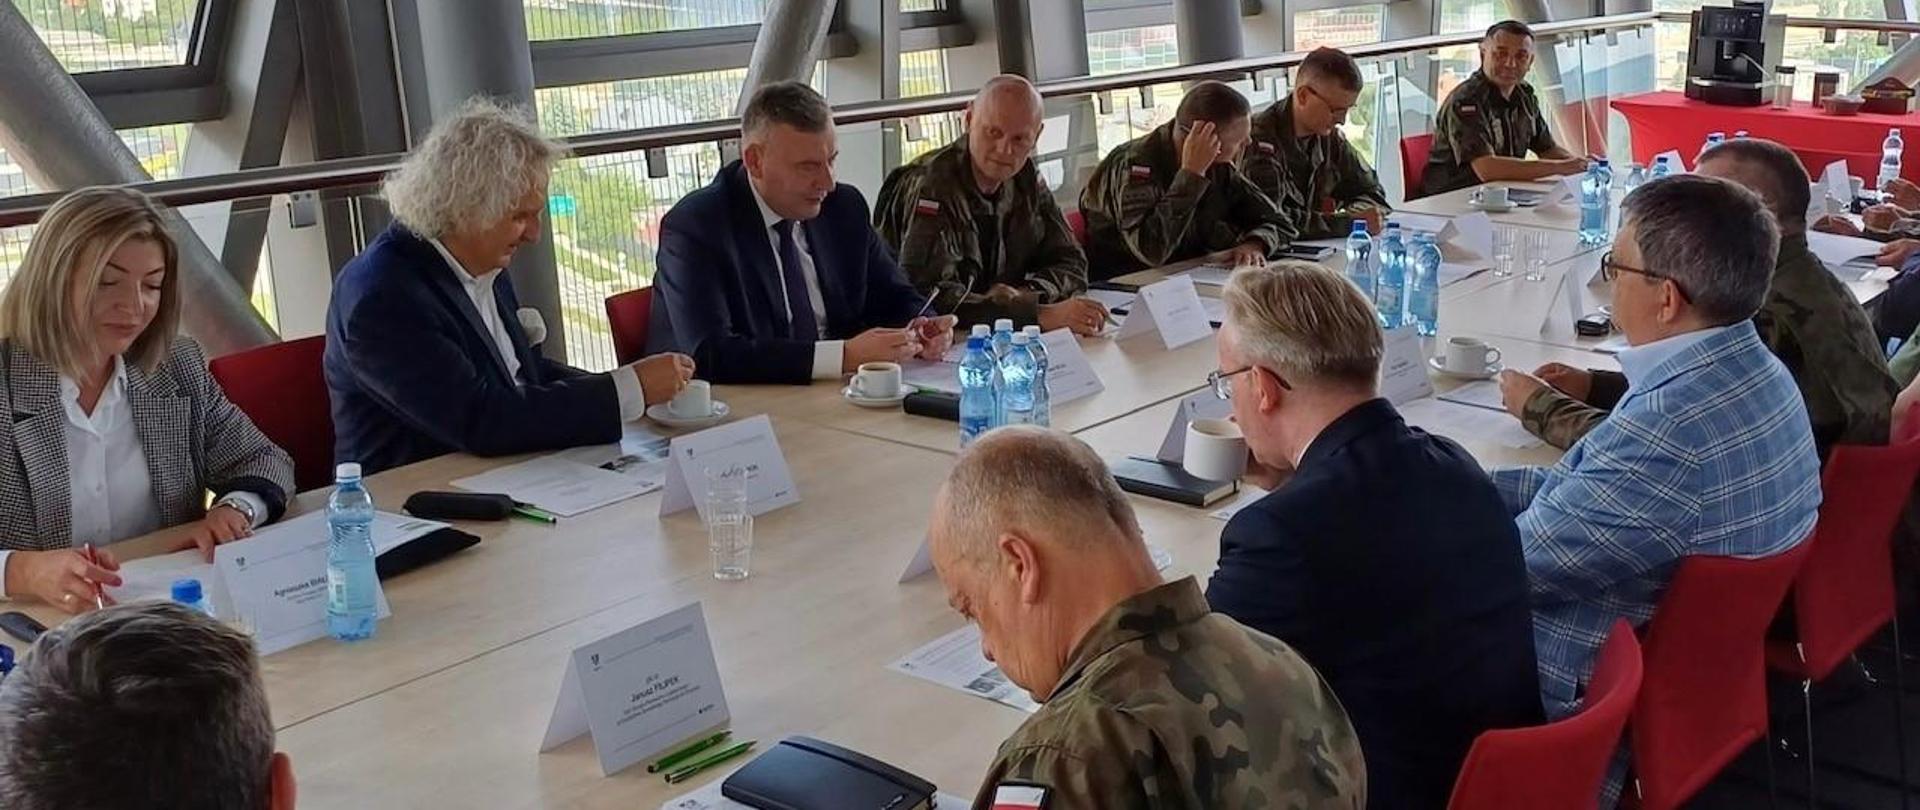 6 czerwca br. wiceminister Paweł Bejda przewodniczył kolejnemu spotkaniu rady programowej dotyczącej zbliżającego się Międzynarodowego Salonu Przemysłu Obronnego w Kielcach.